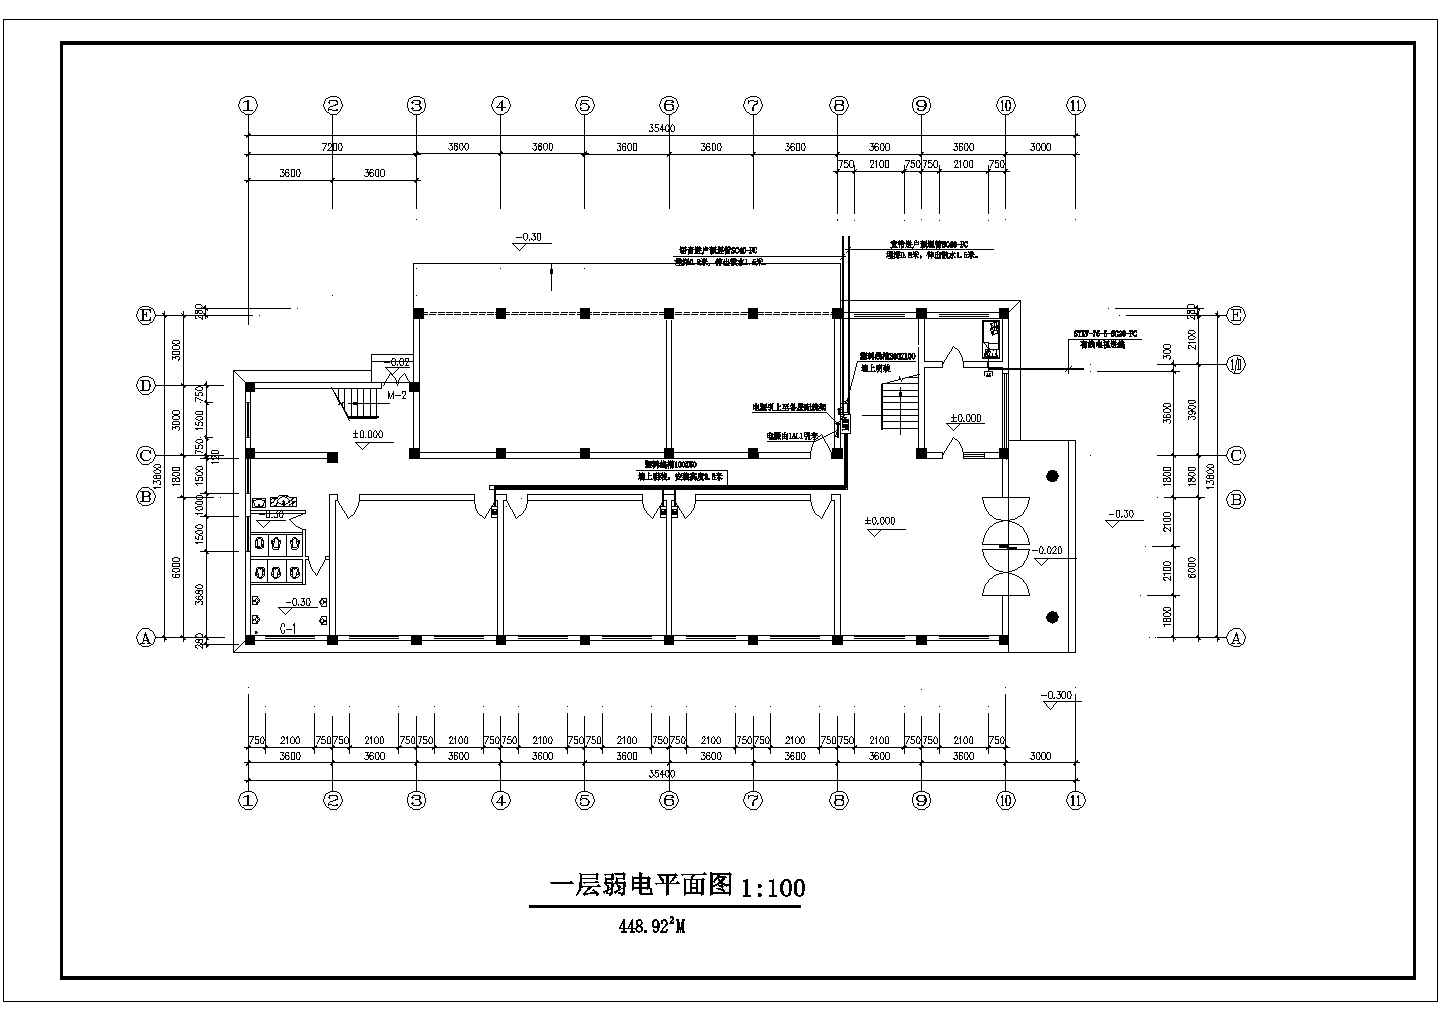 某综合楼电气设计方案详细绘制图纸